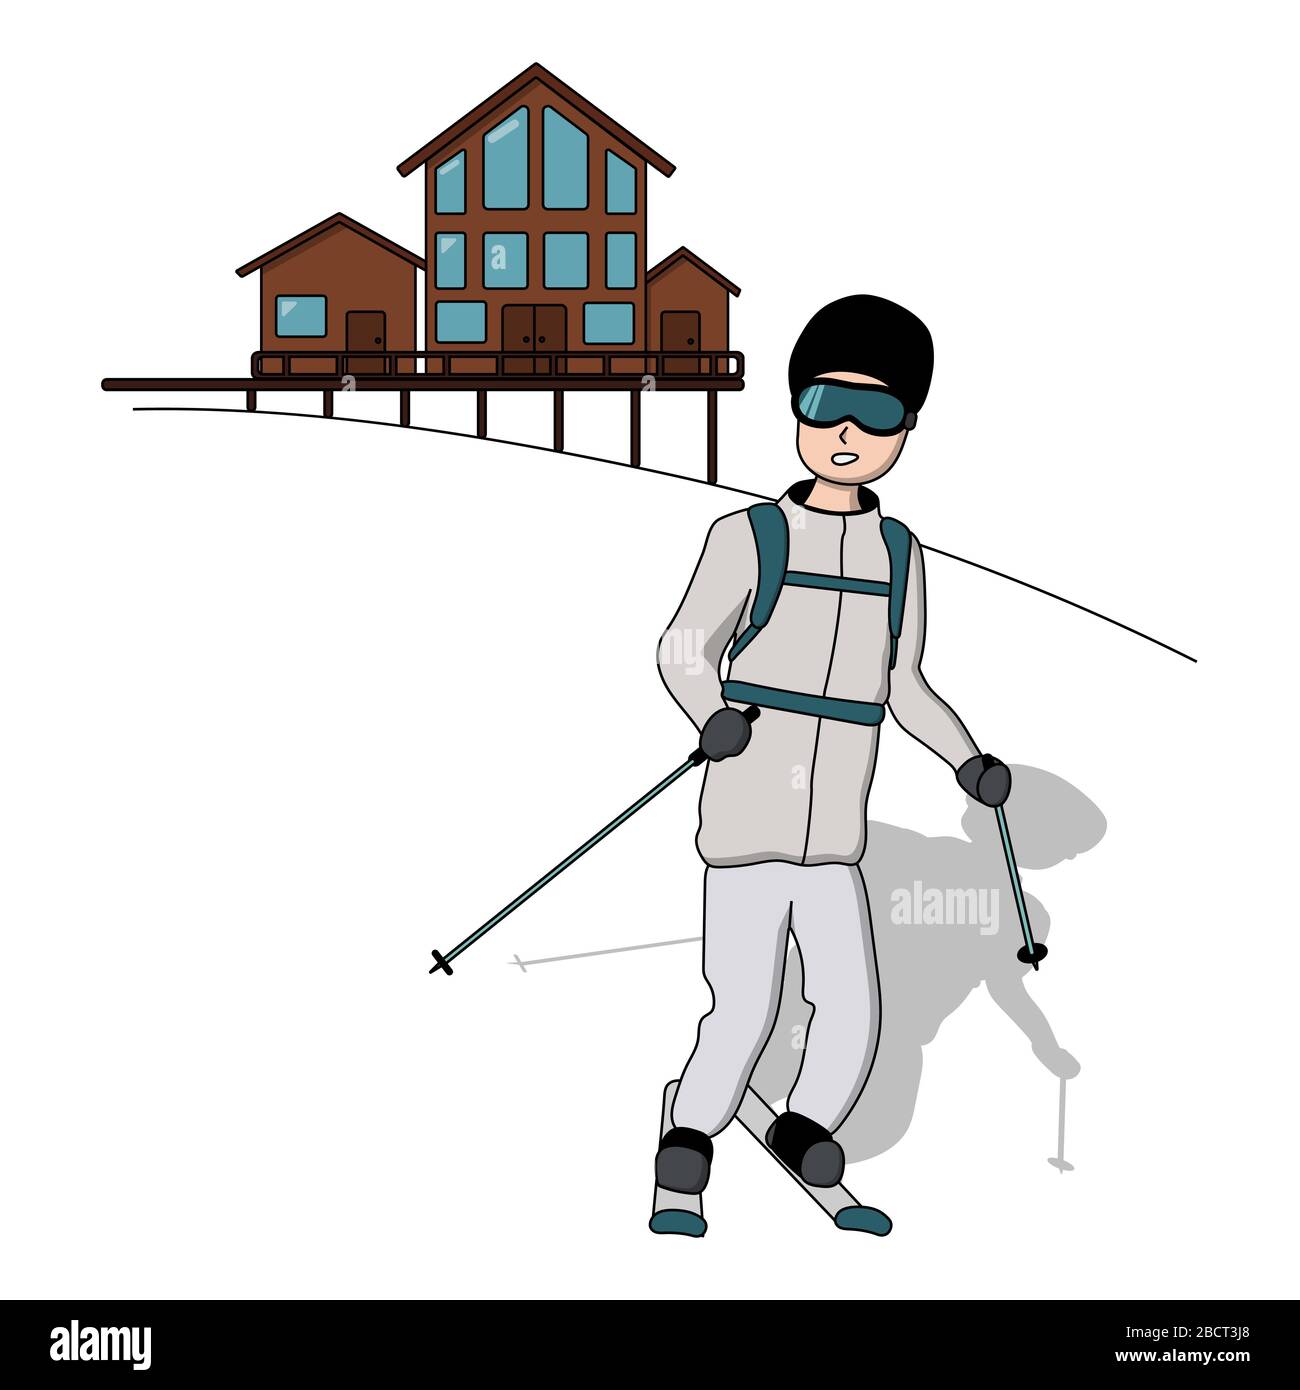 ski alpin dans la montagne. station de ski. fond blanc isolé illustration vectorielle de stock Illustration de Vecteur